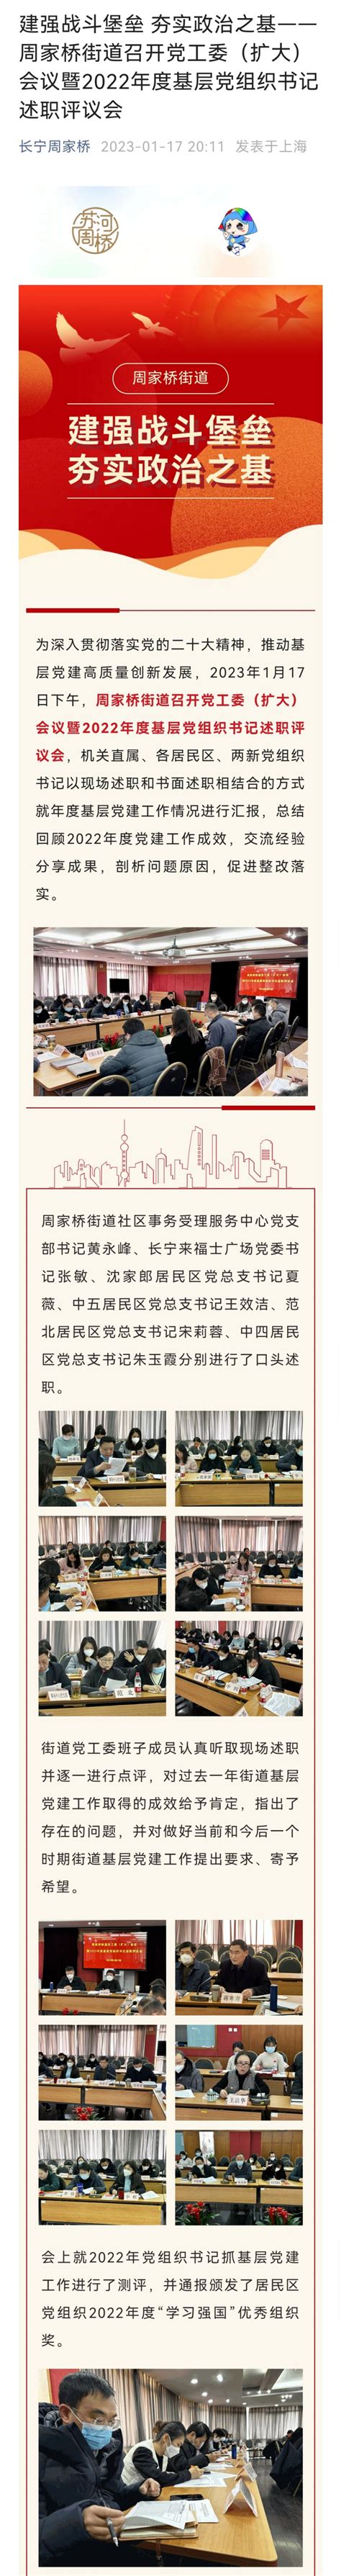 上海市长宁区人民政府-长宁区教育局-区级新闻-活力教育看长宁，人工智能领先行